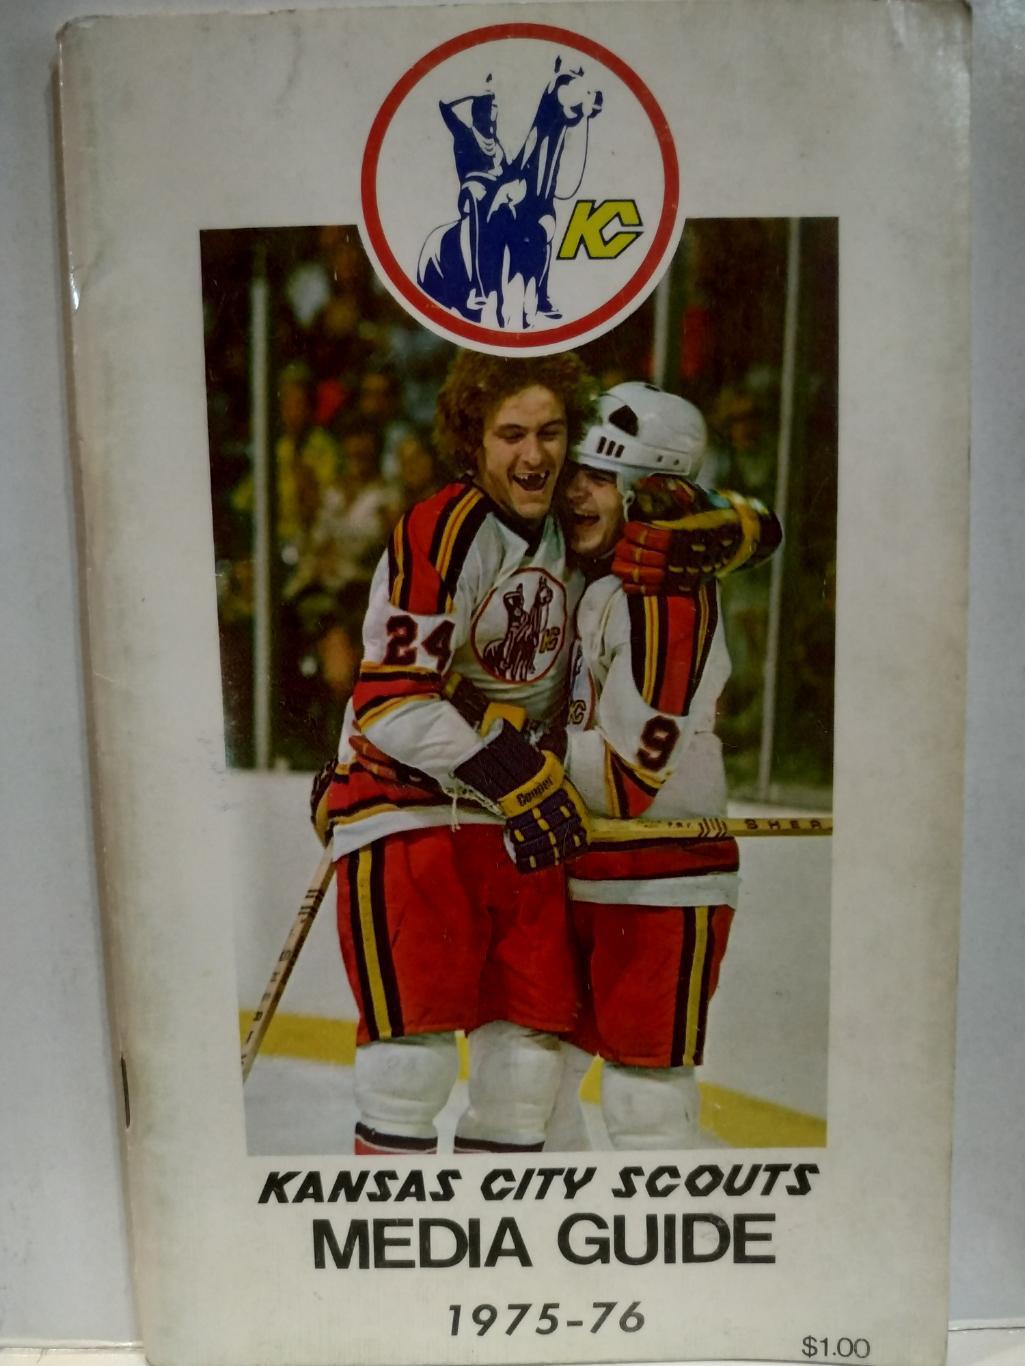 ХОККЕЙ СПРАВОЧНИК ЕЖЕГОДНИК НХЛ КАНЗАС 1975-76 KANSAS CITY SCOUTS MEDIA GUIDE